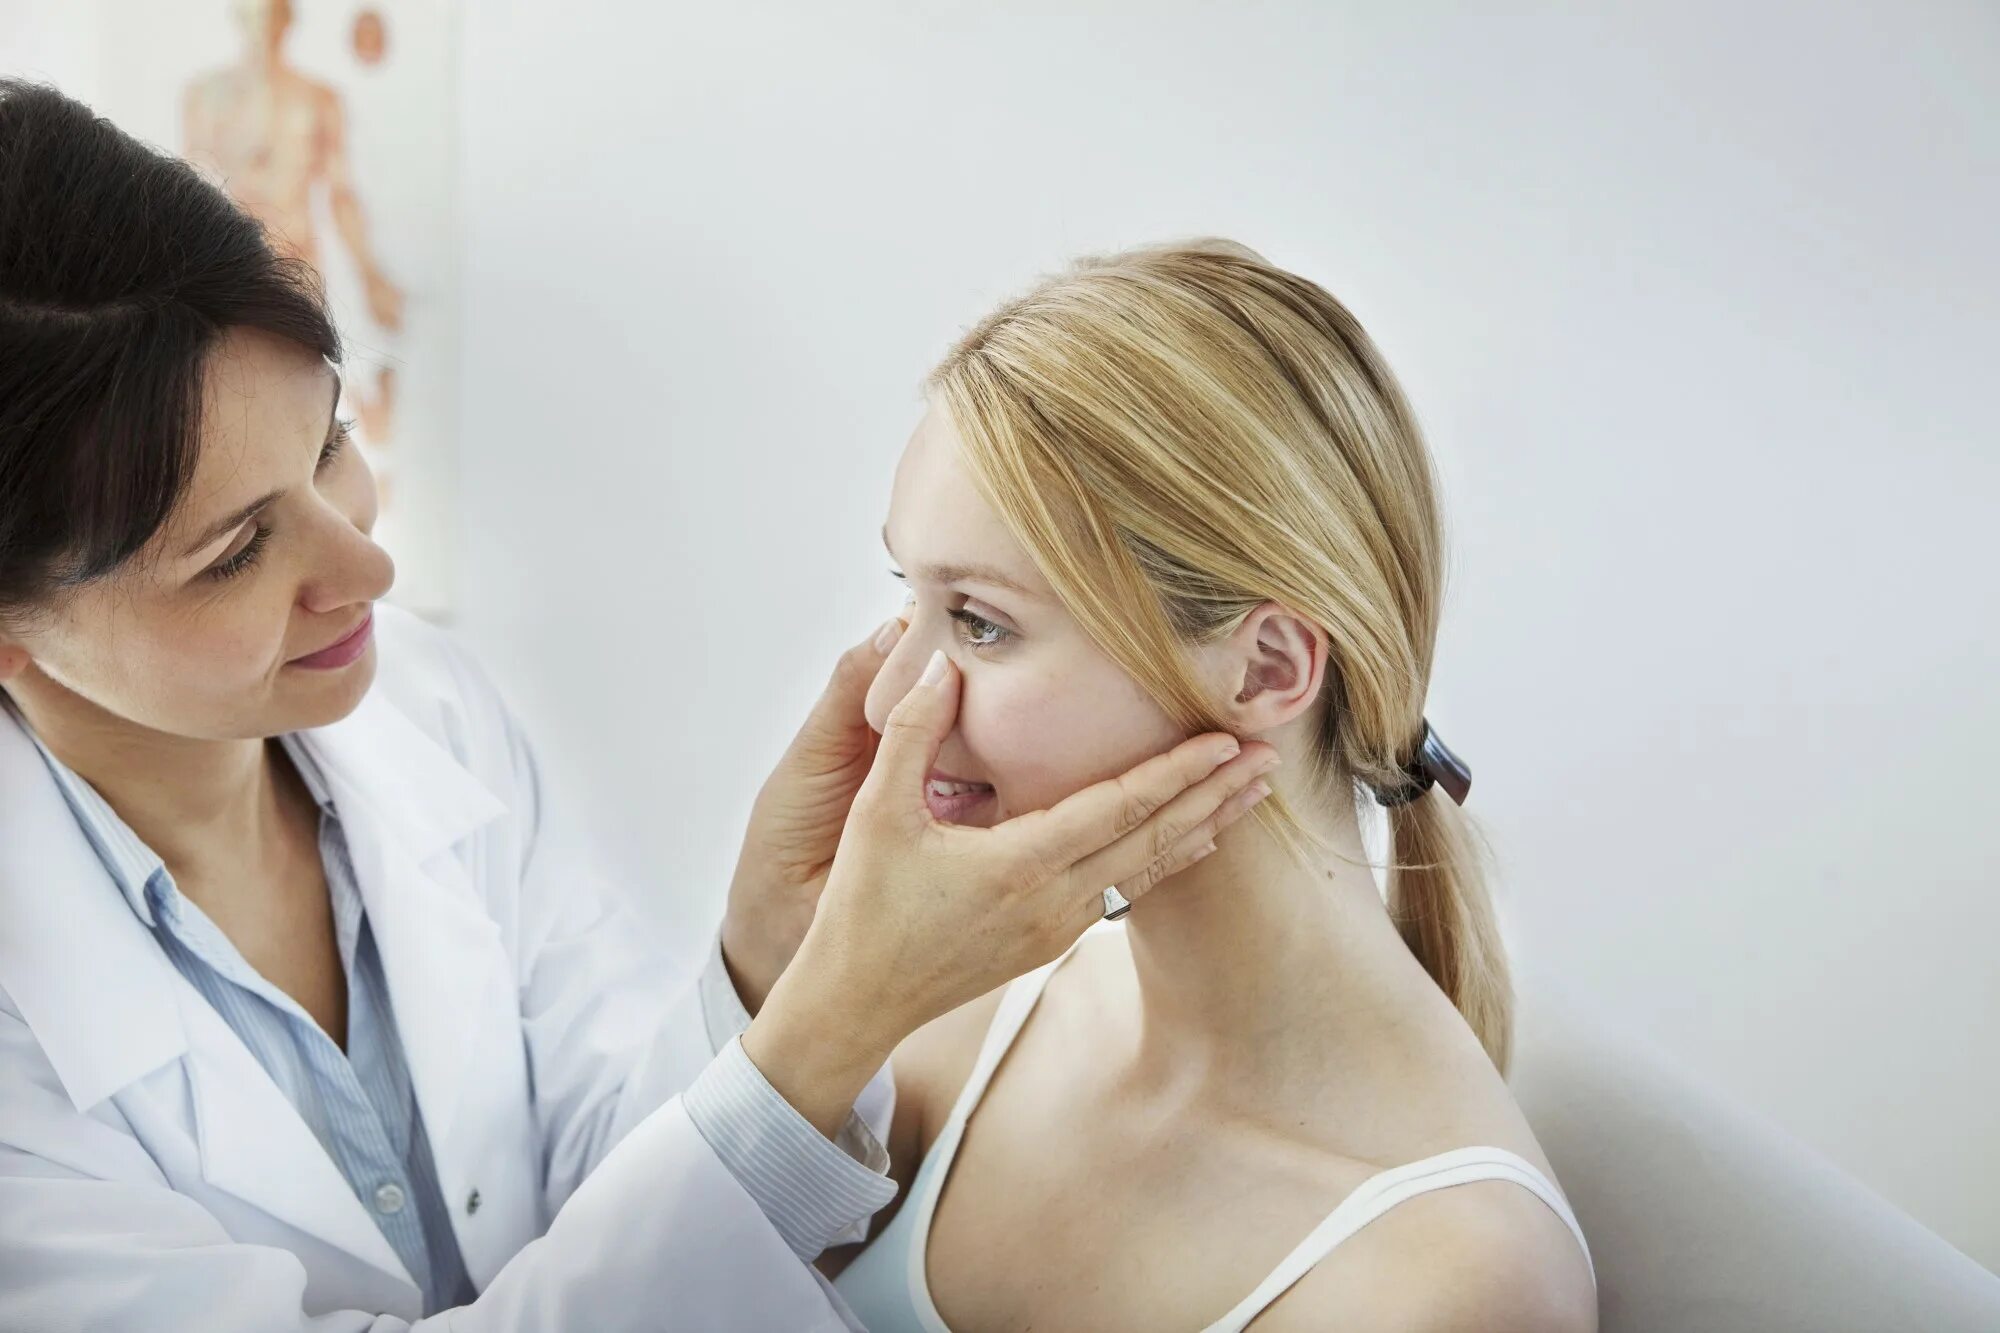 Оториноларингология нос. ЛОР И пациент. ЛОР осматривает пациента. Заболевания связанные с носом